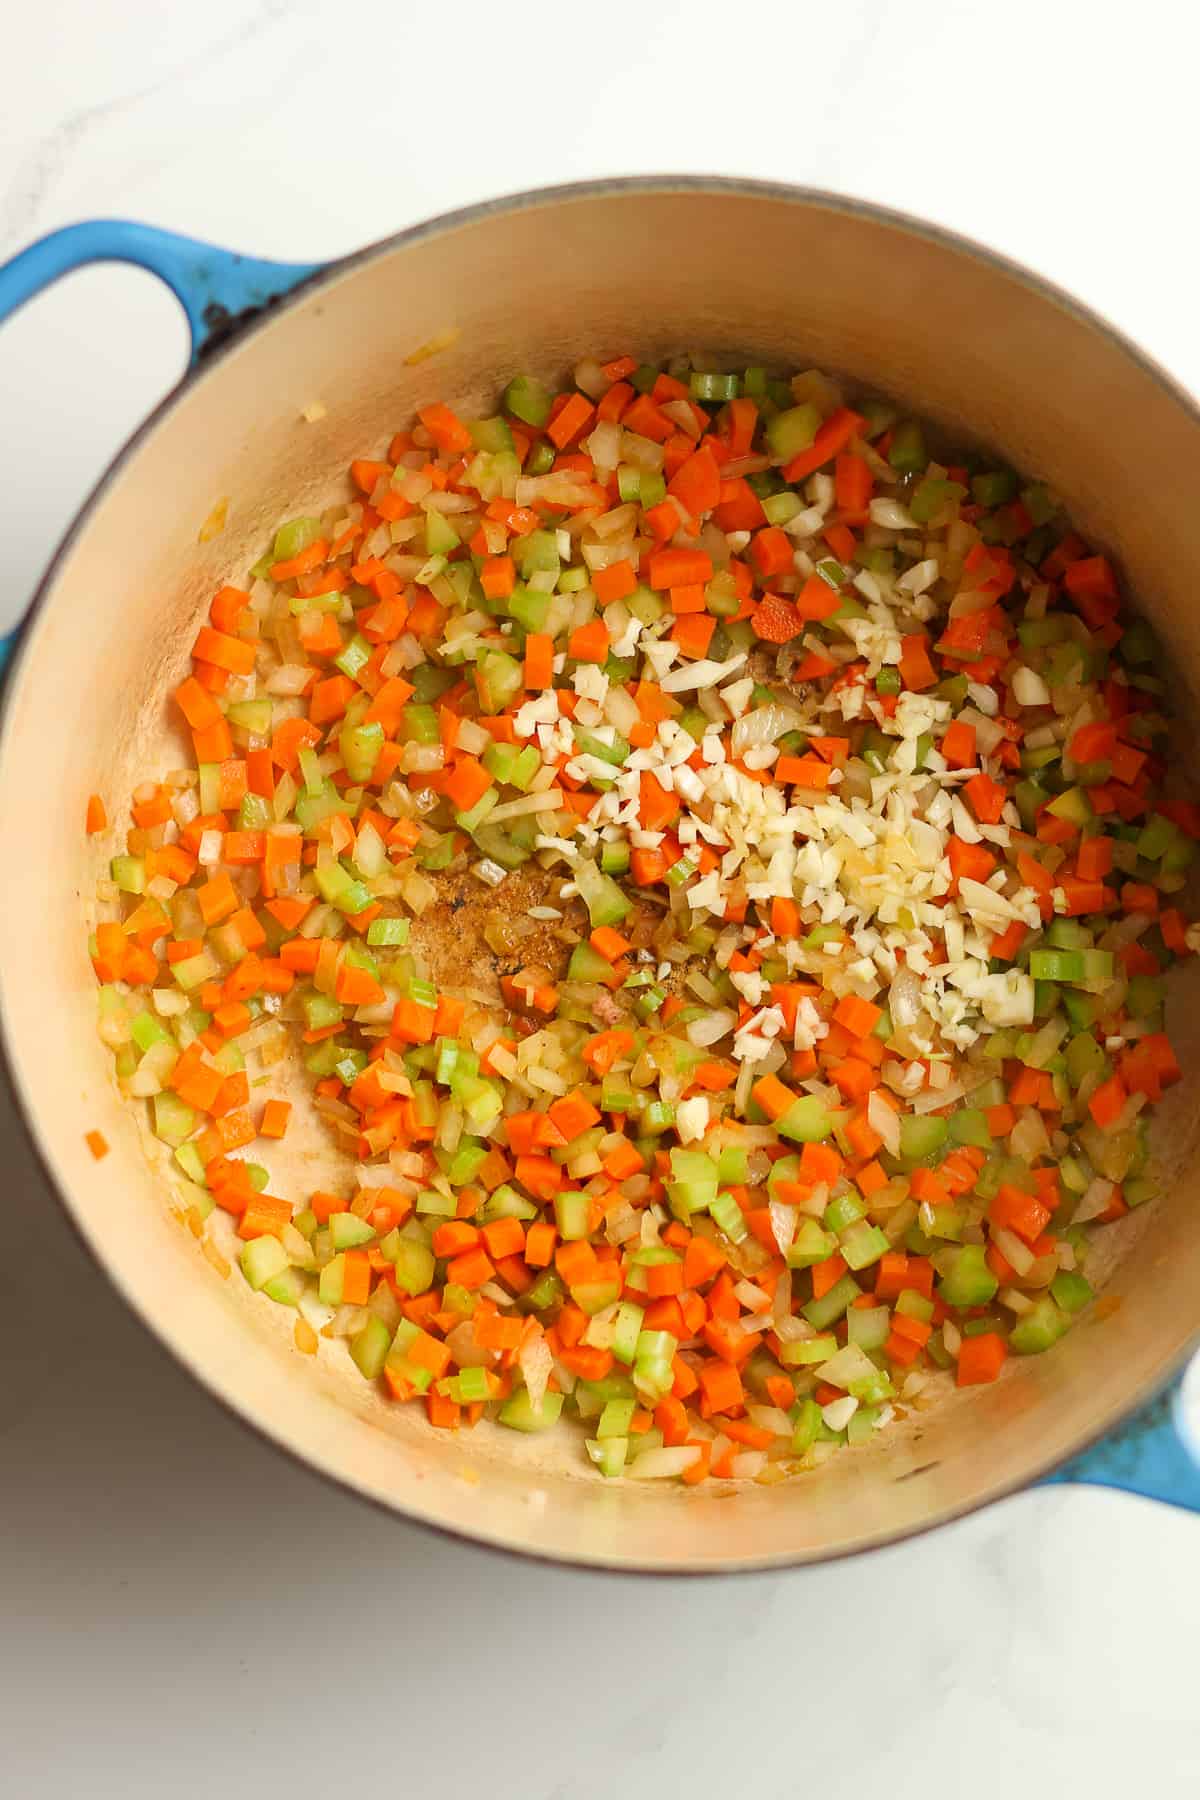 A stock pot of sautéed veggies.